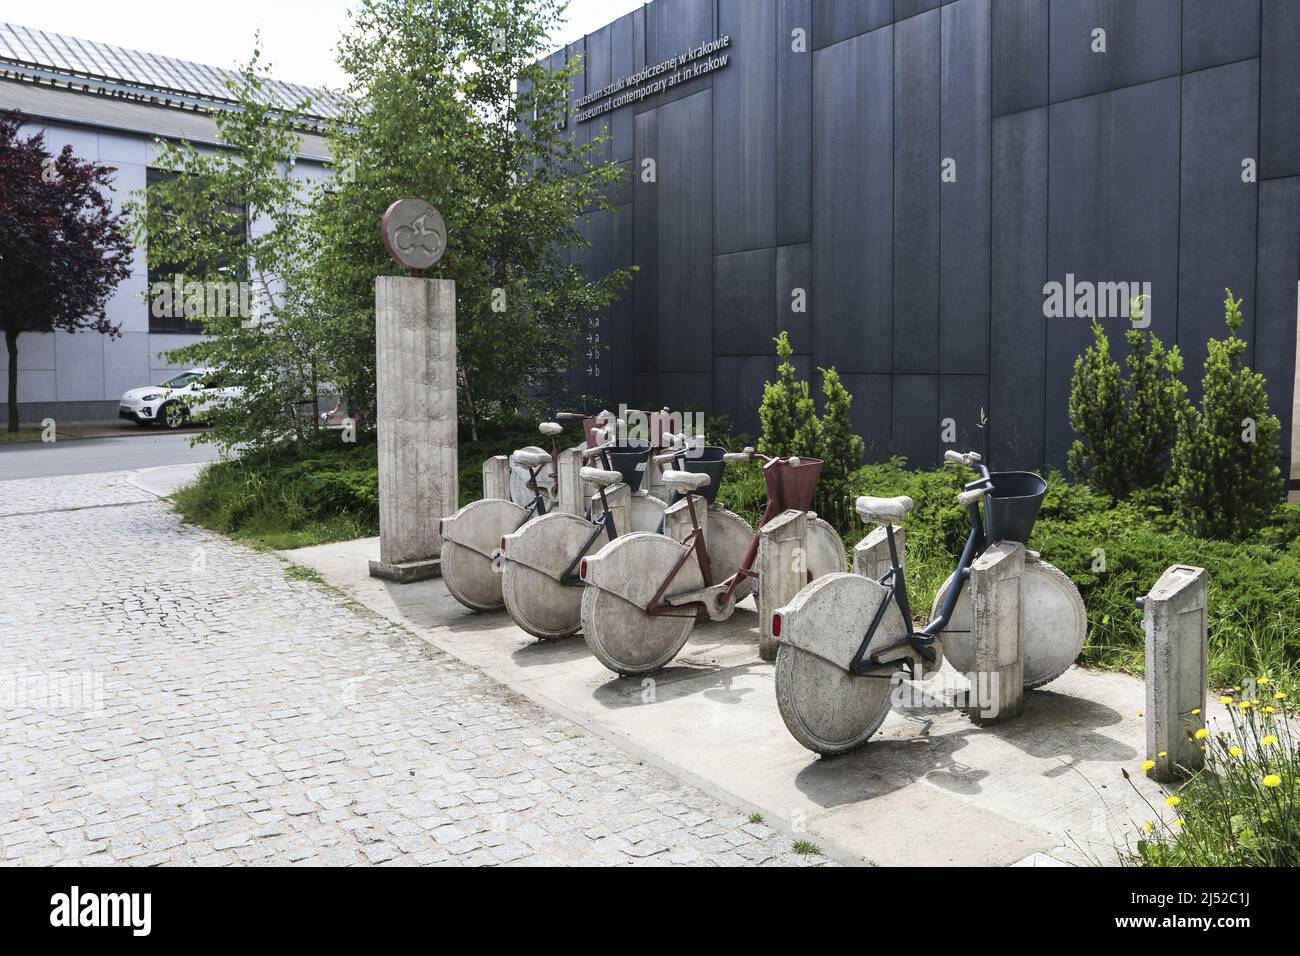 Bicicletas de piedra - una exposición de arte al aire libre en Cracovia, Polonia. Foto de stock